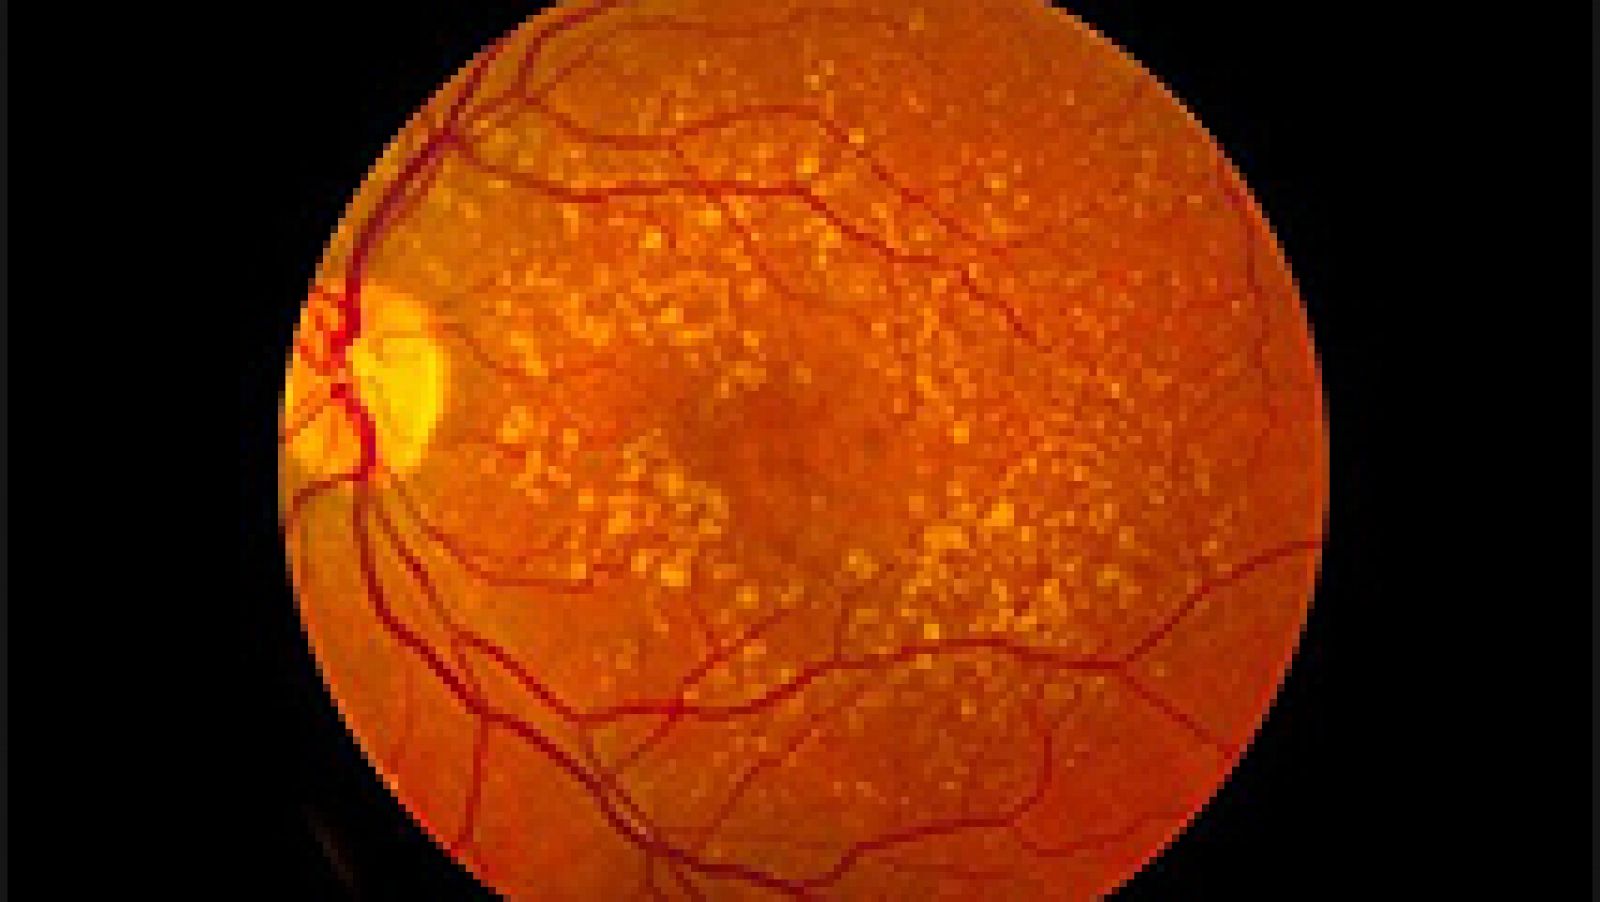  Investigadores han conseguido devolver la visión a pacientes con  enfermedades maculares usando células madre derivadas del epitelio pigmentario retinal (EPR). Los resultados provienen de dos ensayos clínicos con resultados positivos a largo plazo dados  a conocer por Advanced Cell Technology, sobre 18 pacientes en Estados  Unidos y tras al menos seis meses de seguimiento tras el trasplante.